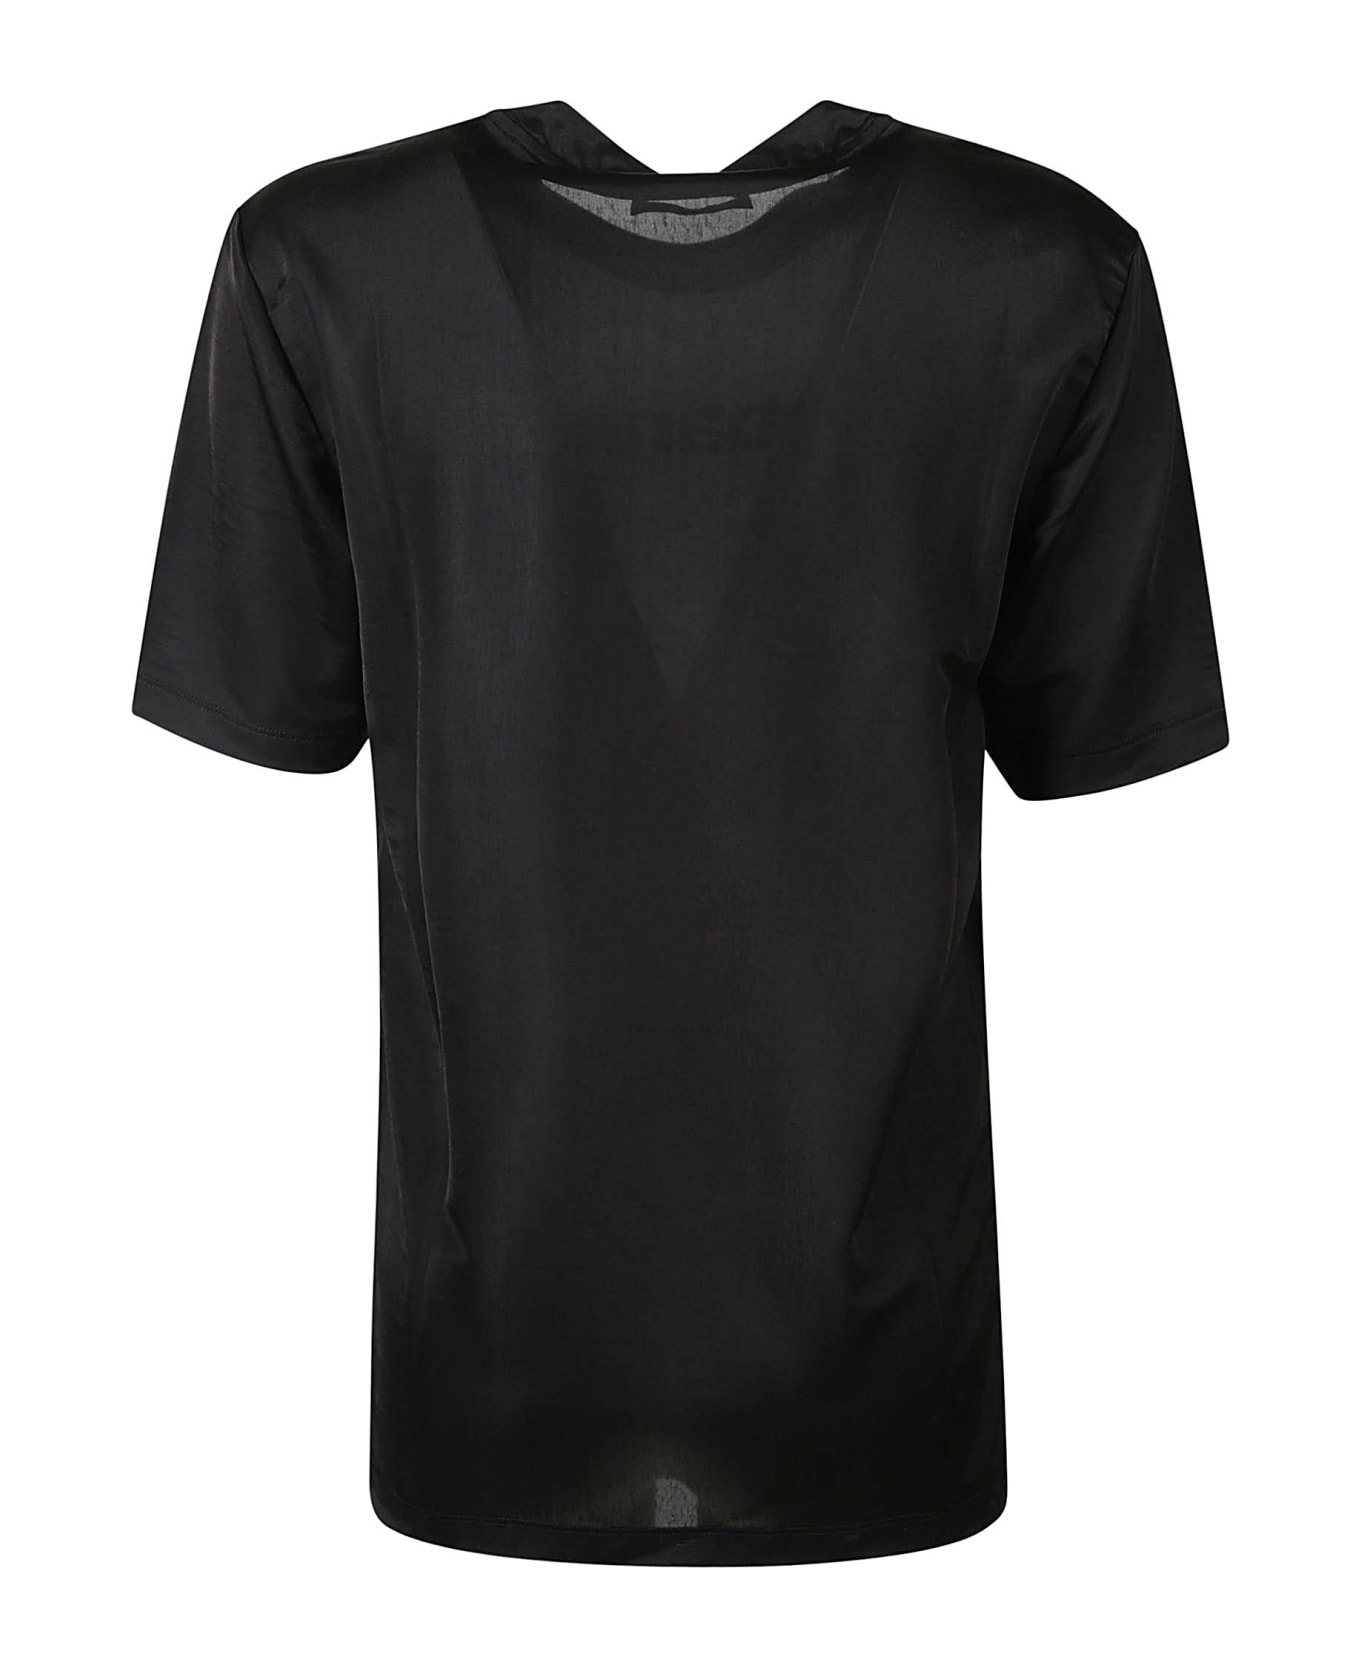 Paco Rabanne Round Neck Logo T-shirt - Black Tシャツ